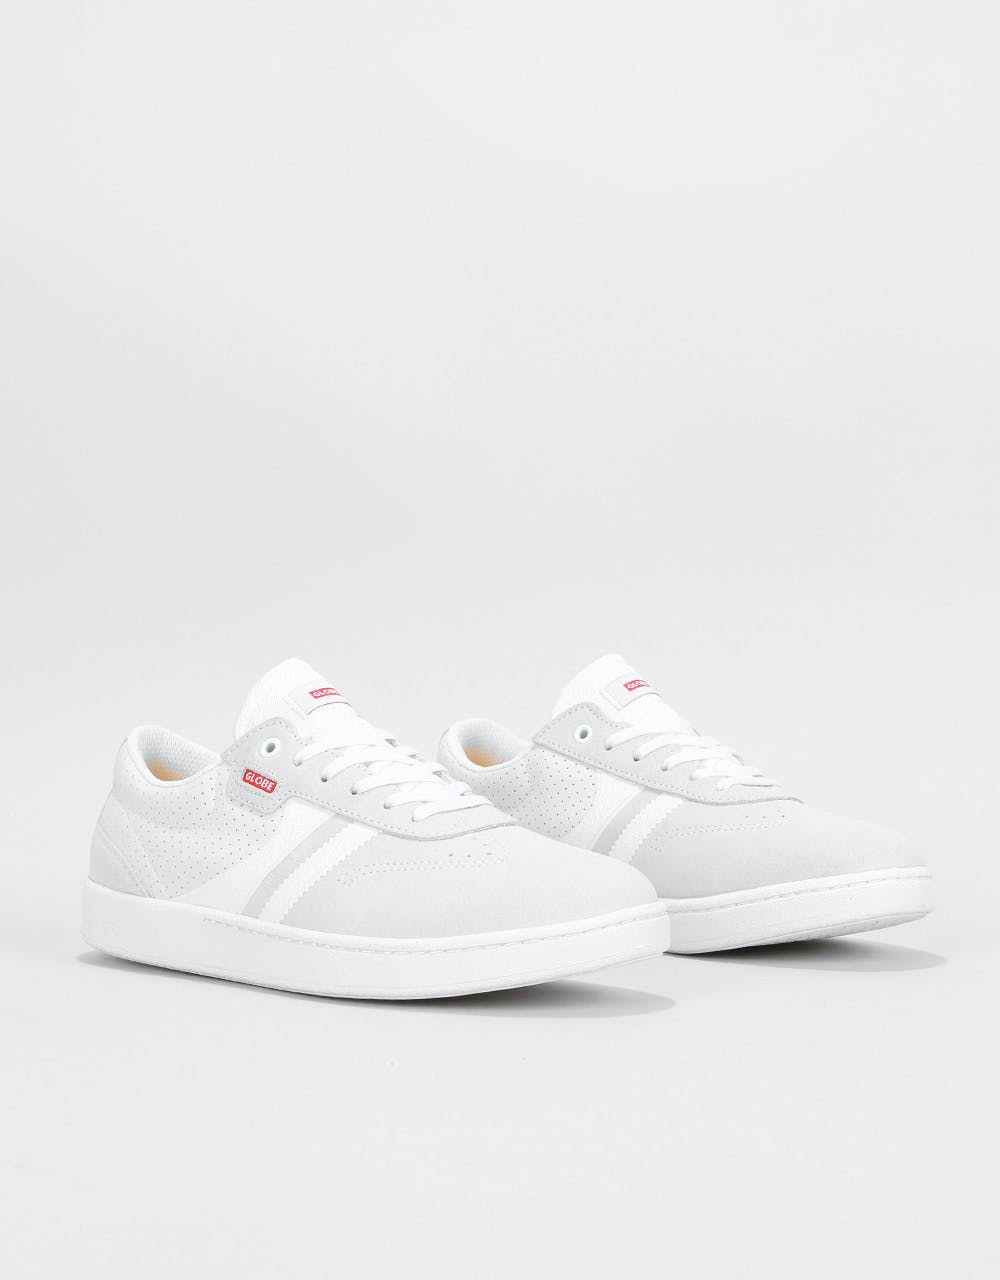 Globe Empire Skate Shoes - White/Hart